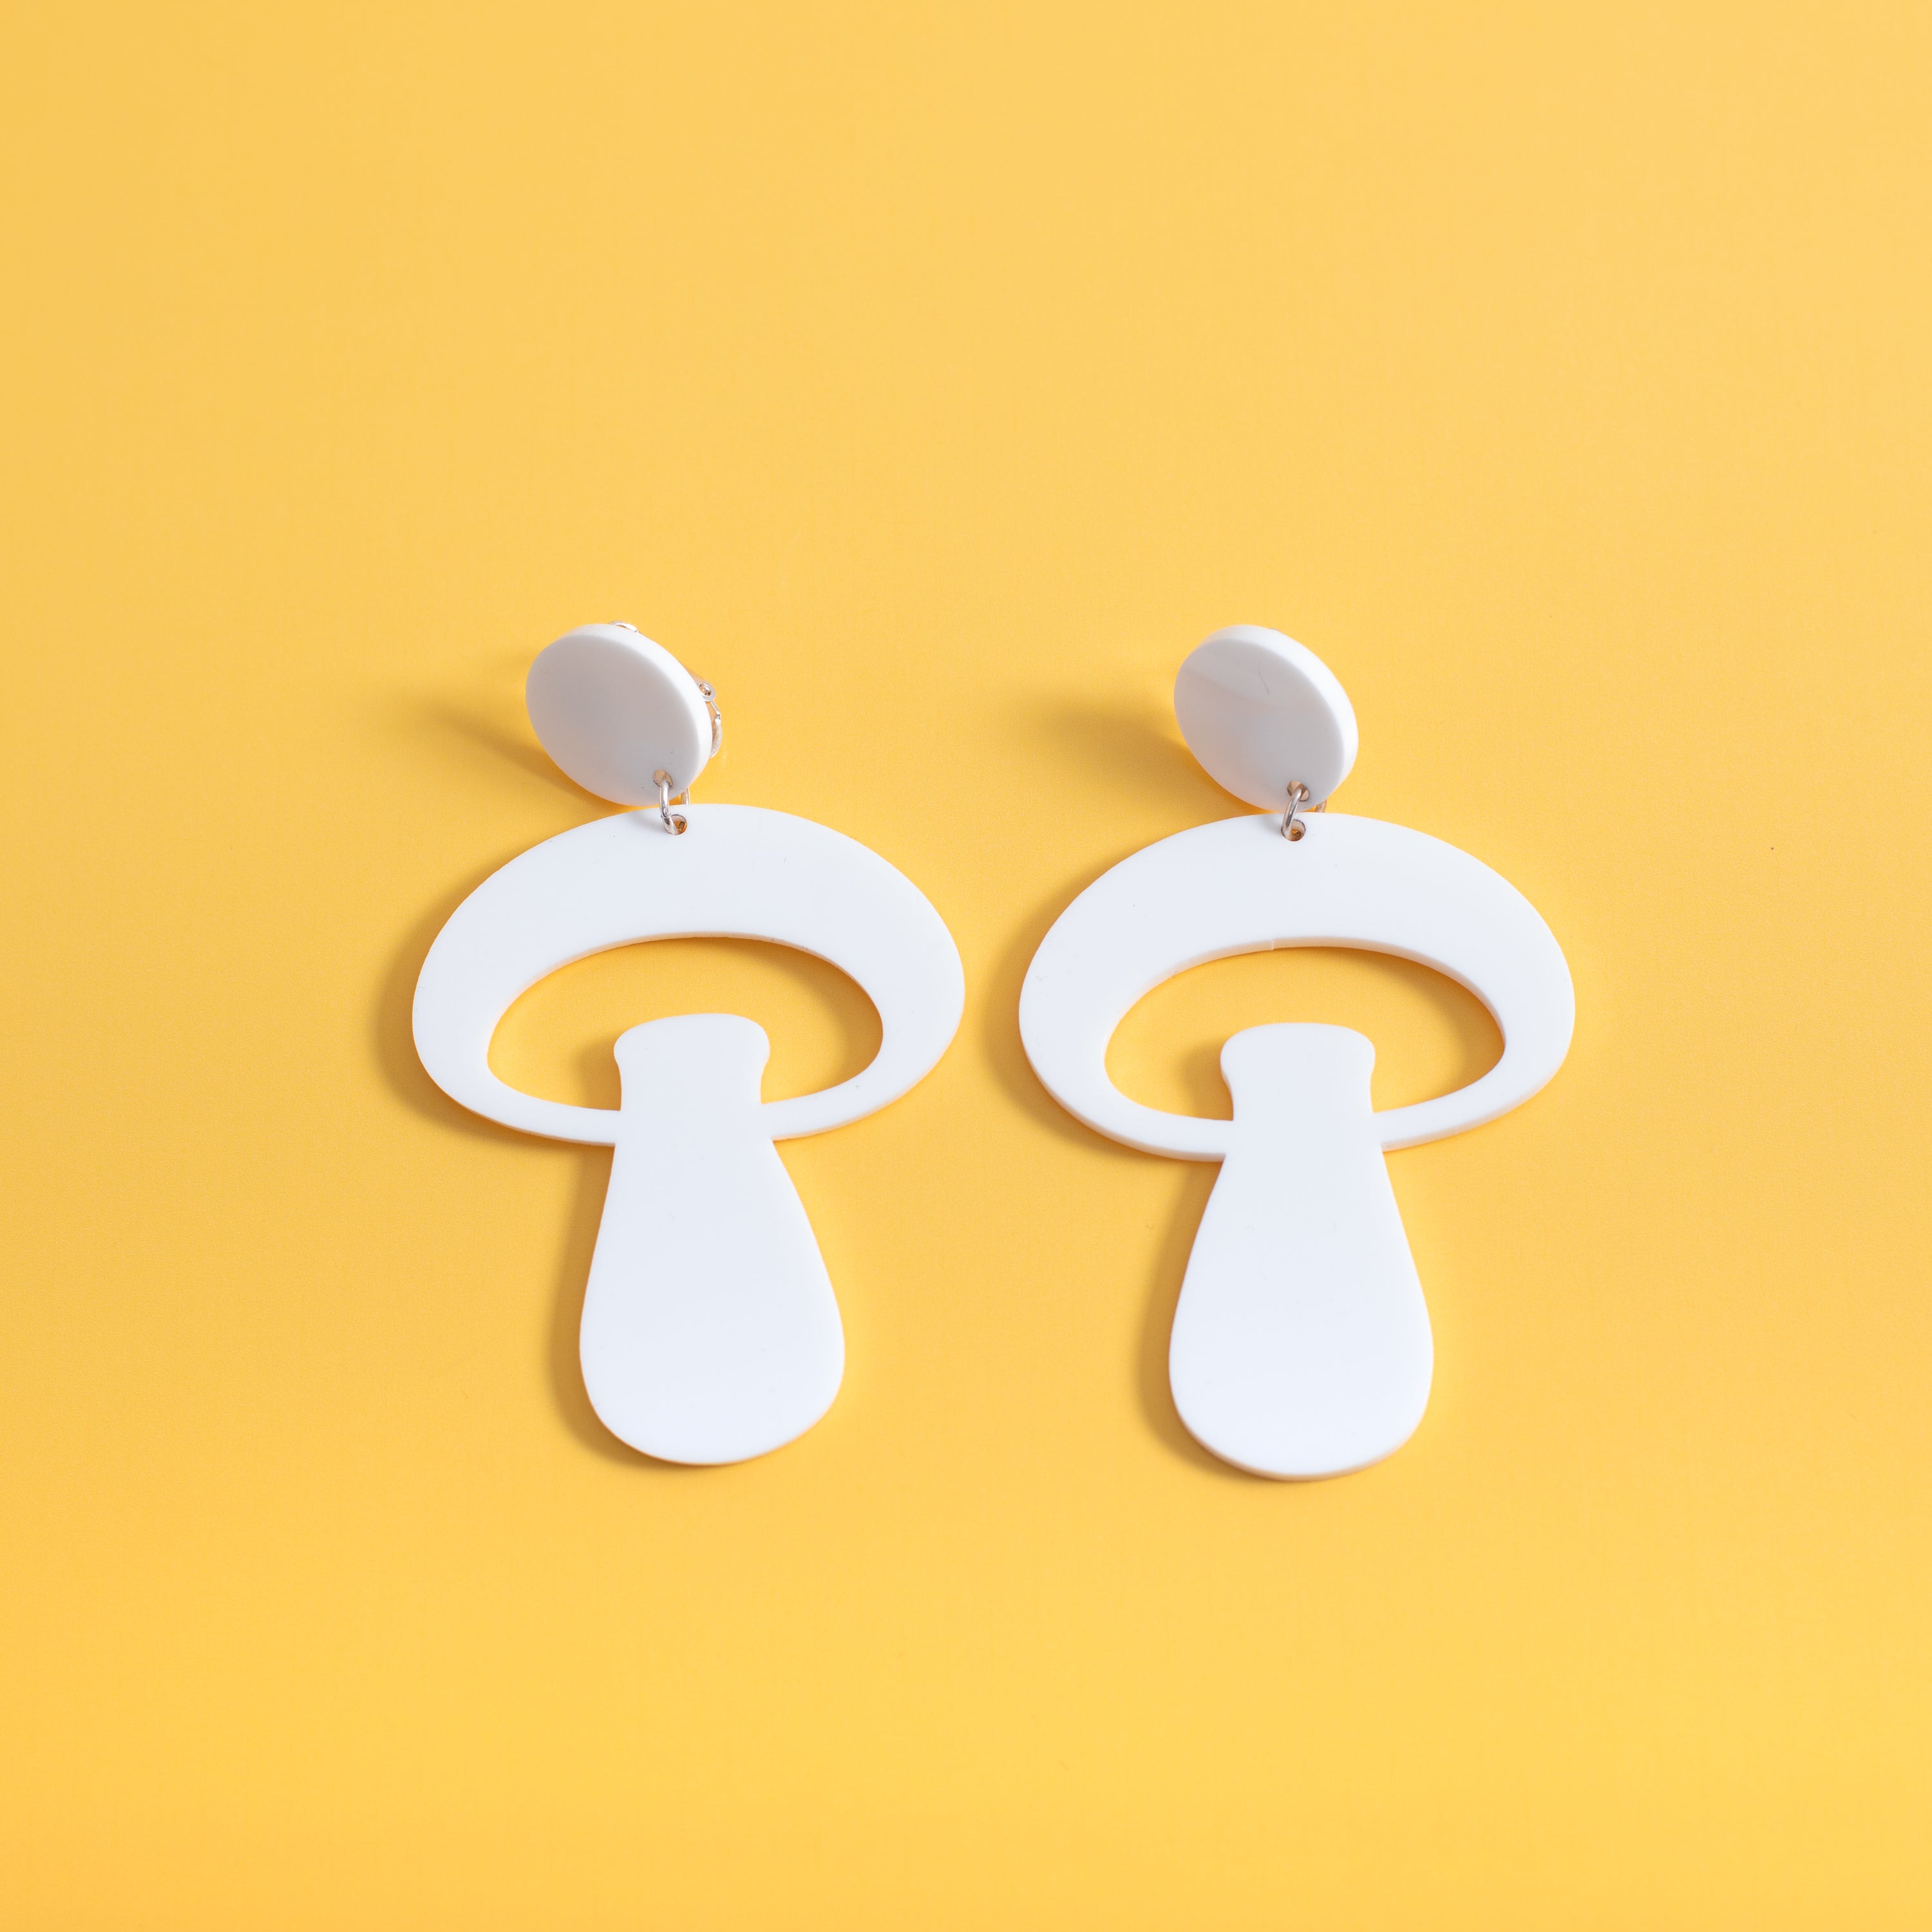 The Alice Mushroom Stud Earrings